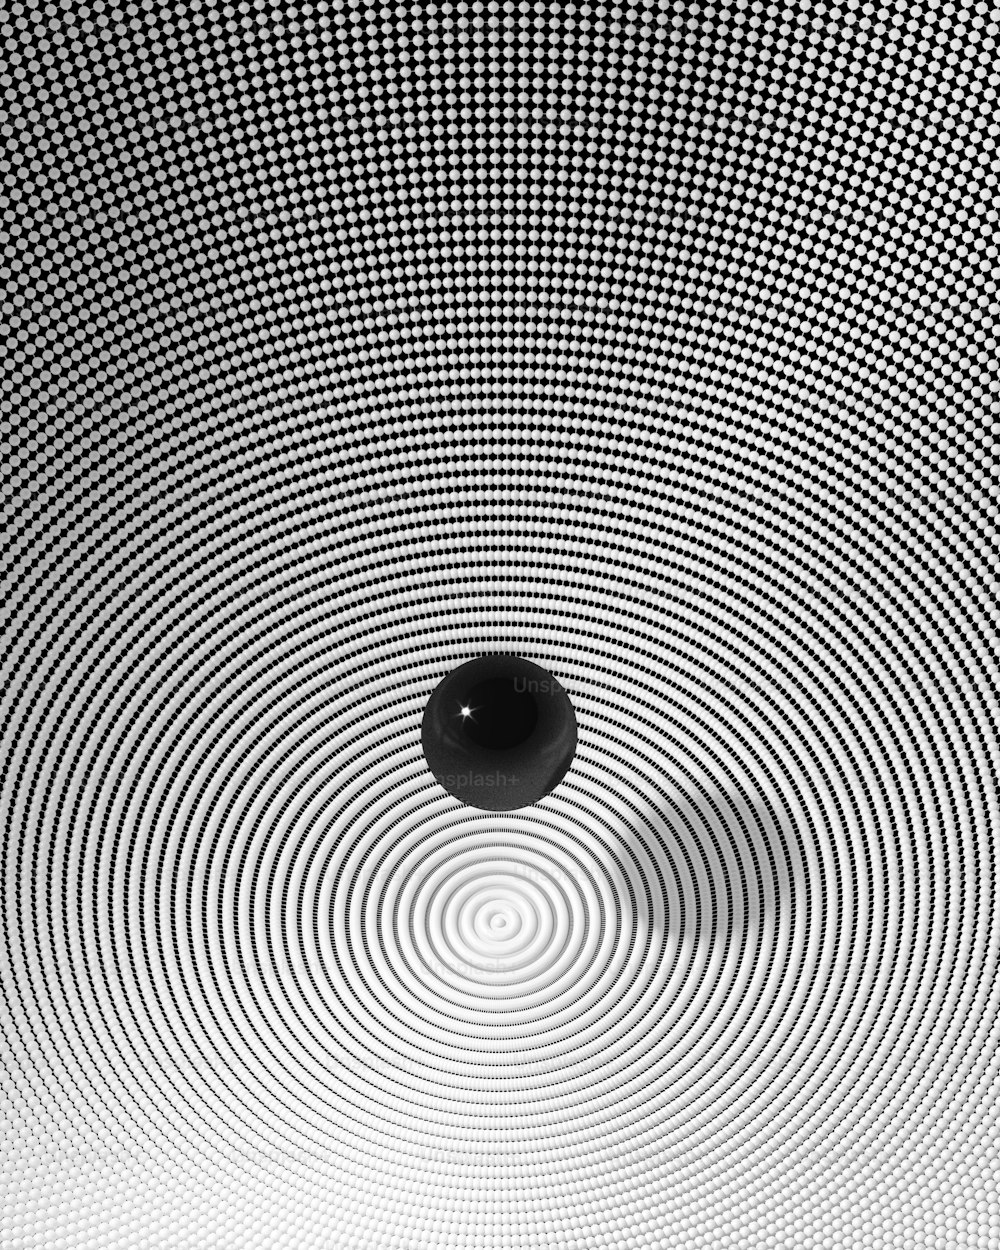 Una foto in bianco e nero di una palla al centro di un bianco e nero